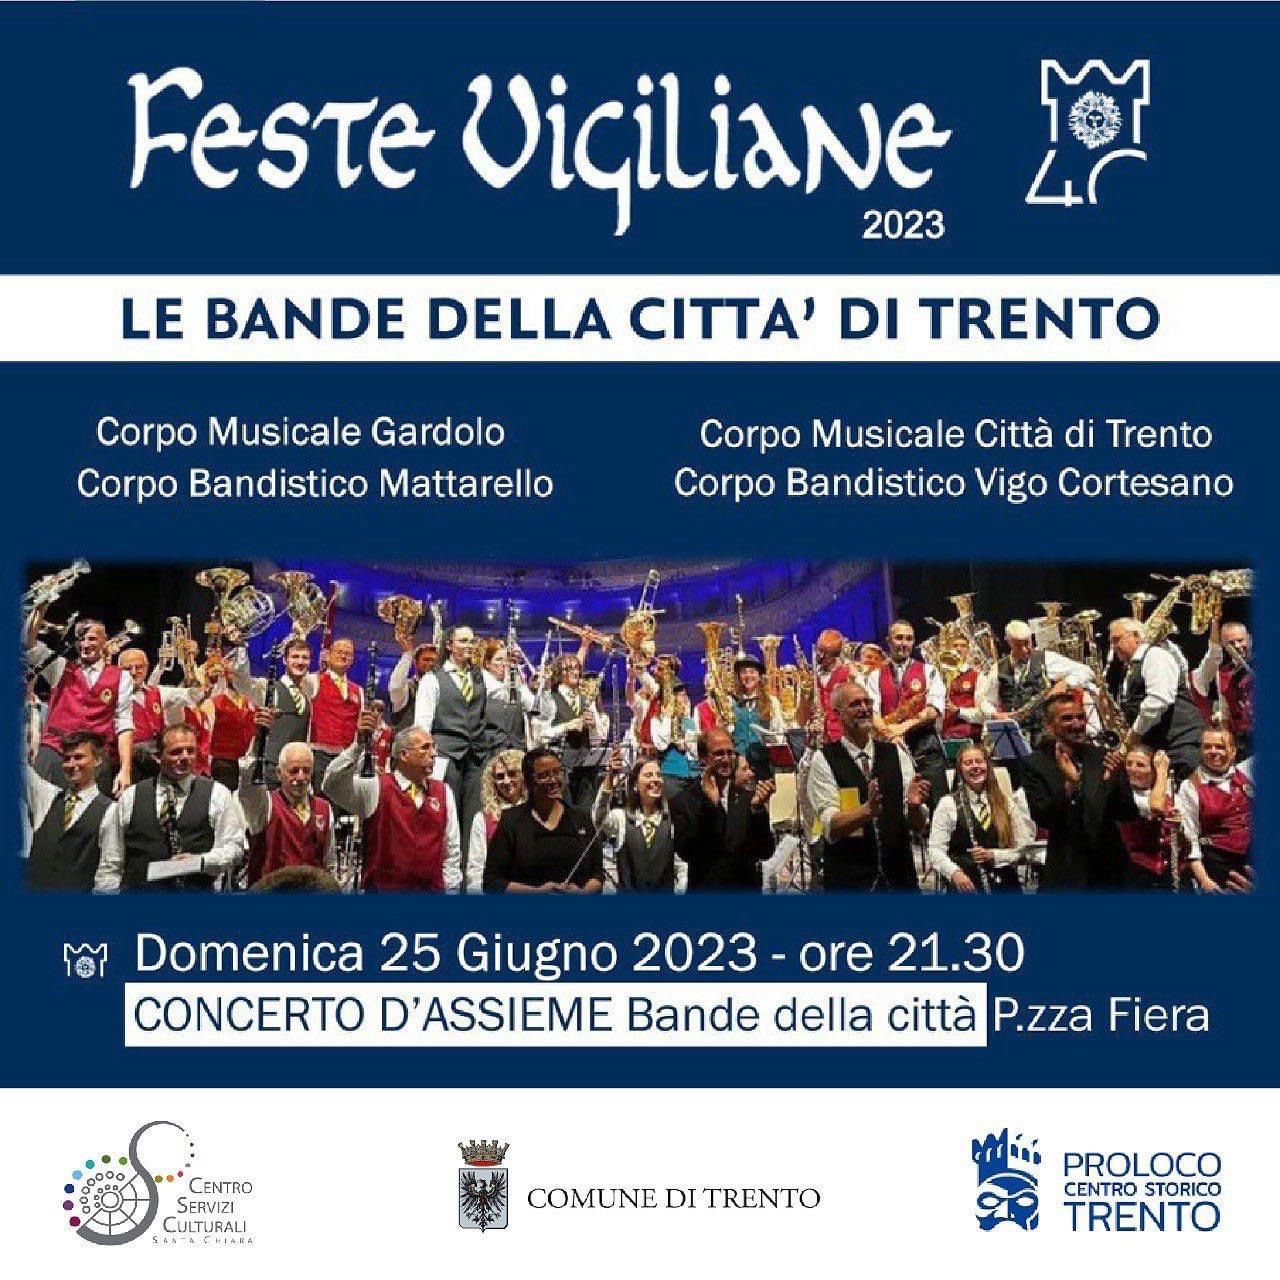 Feste Vigiliane : concerto delle bande della città di Trento